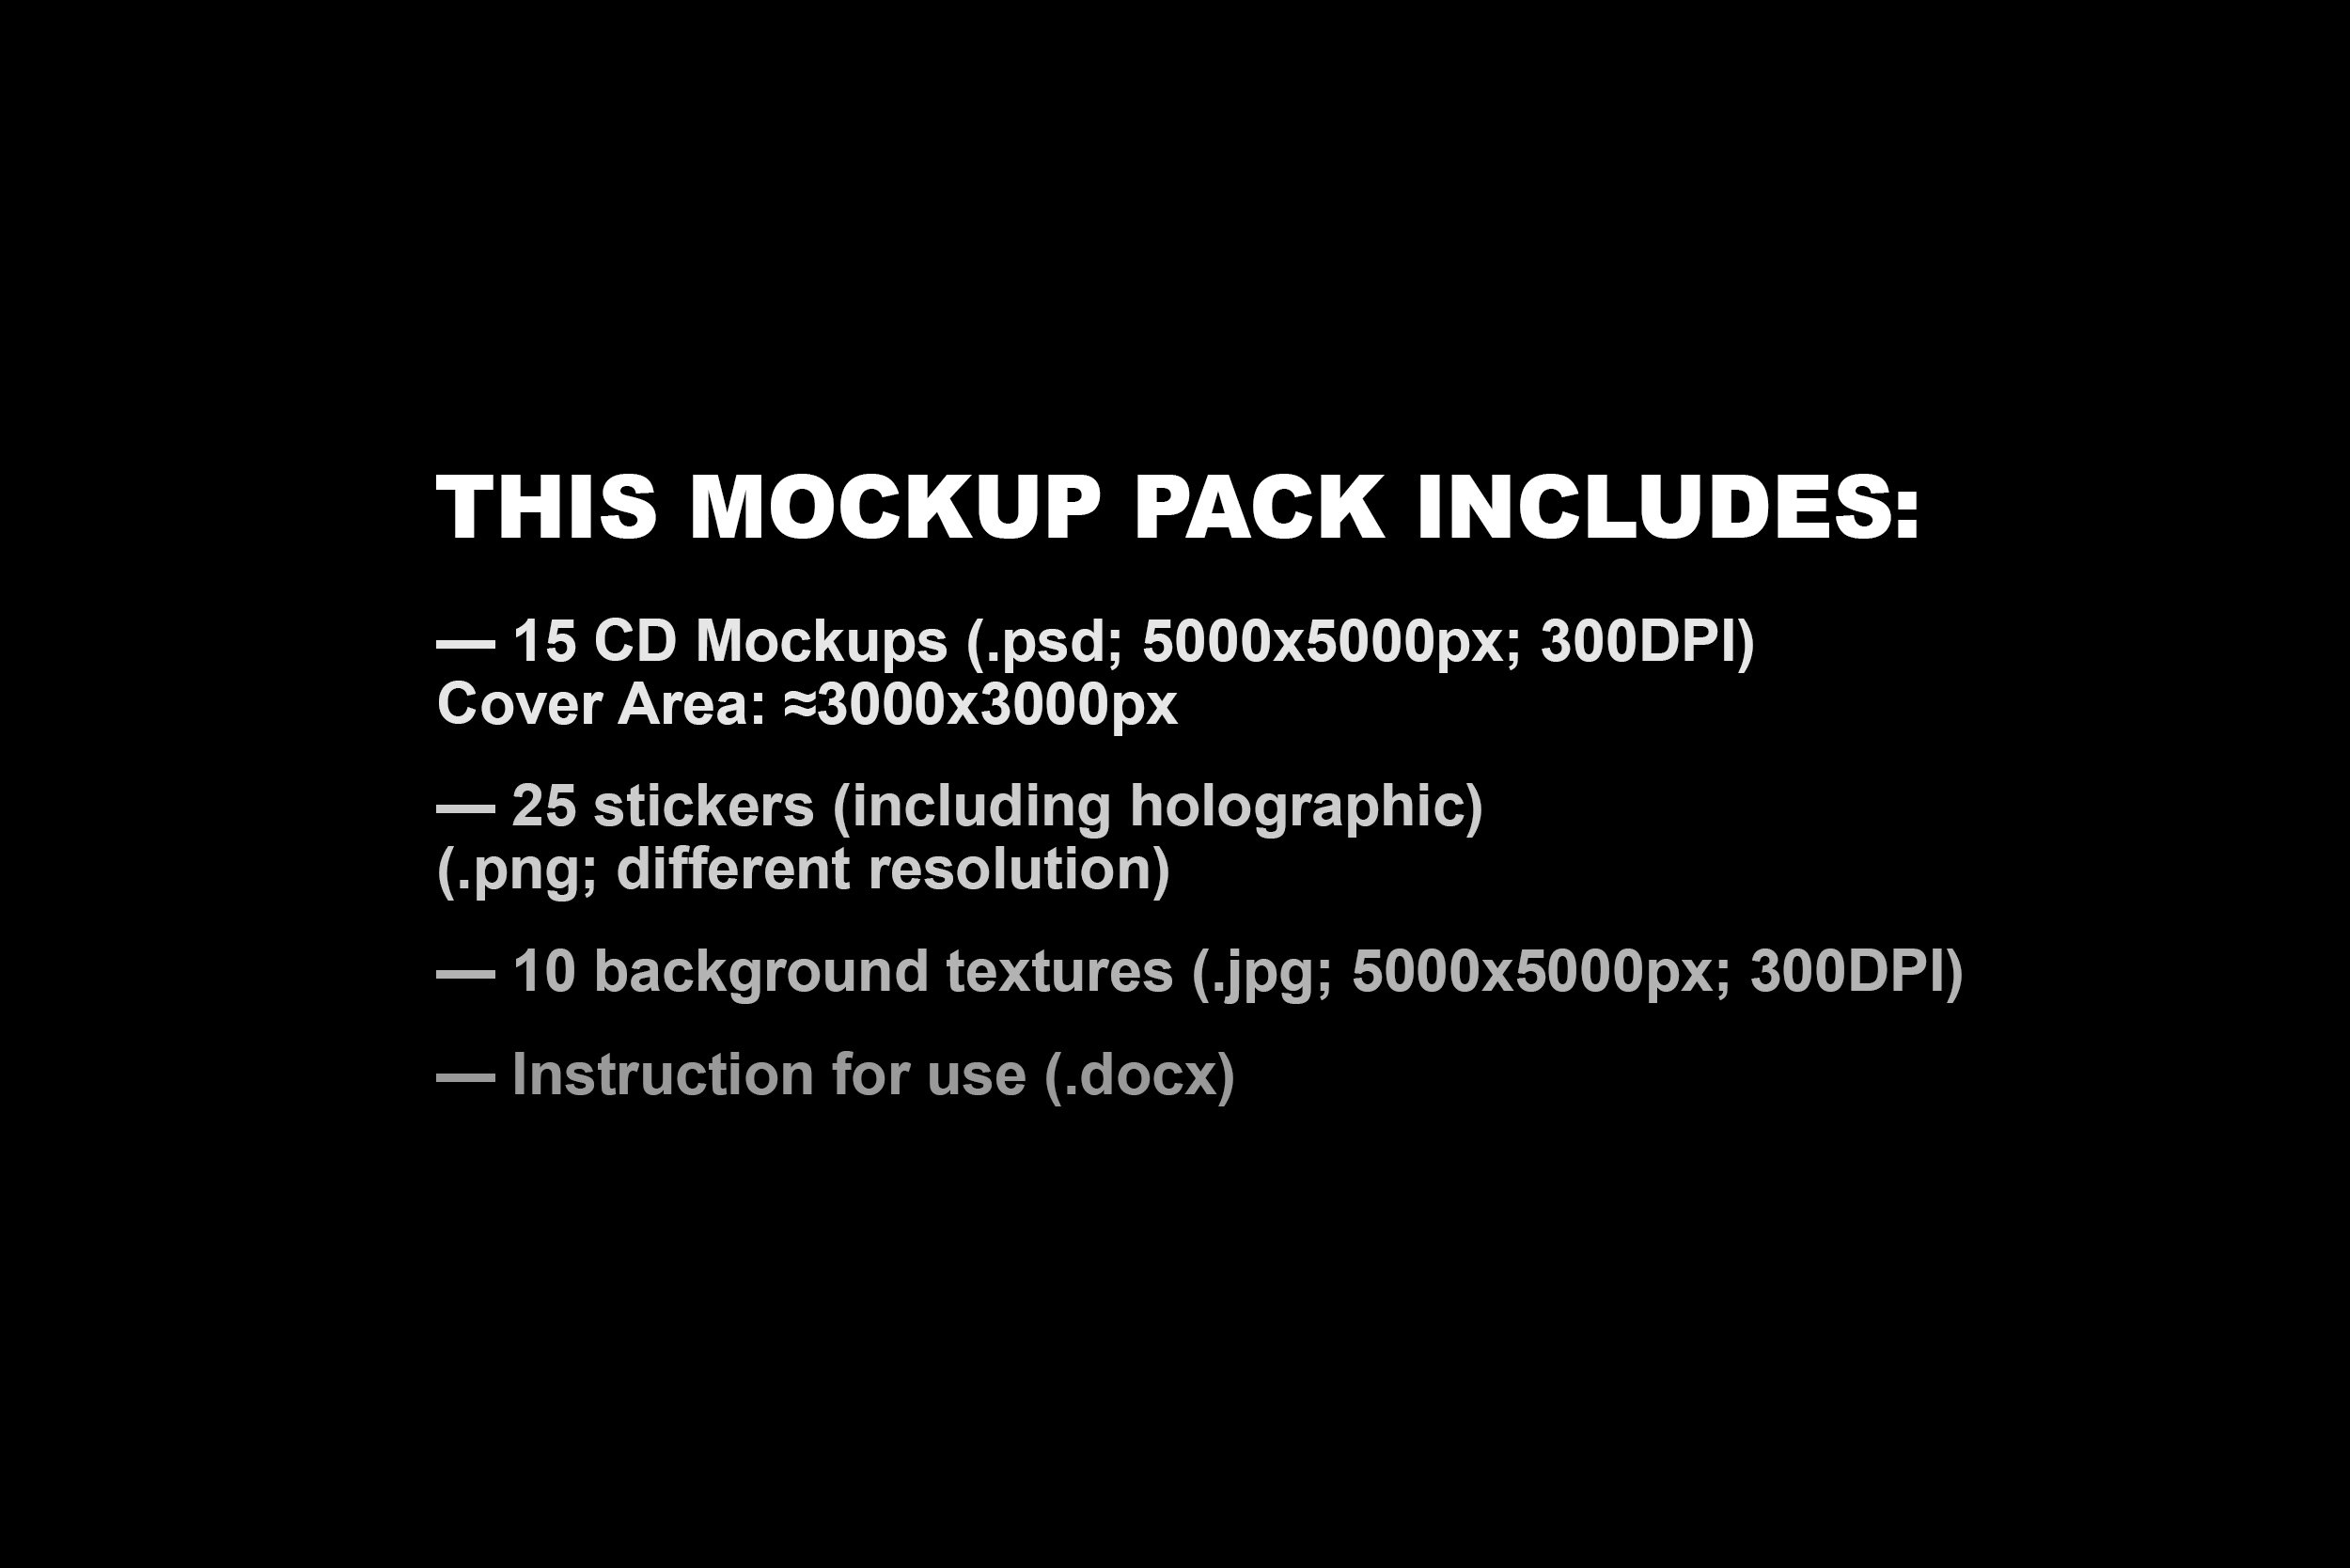 潮流复古嘻哈电影音乐CD塑料包装盒封面标签样机模板Ps设计素材Music CD Cover MOCKUP PACK